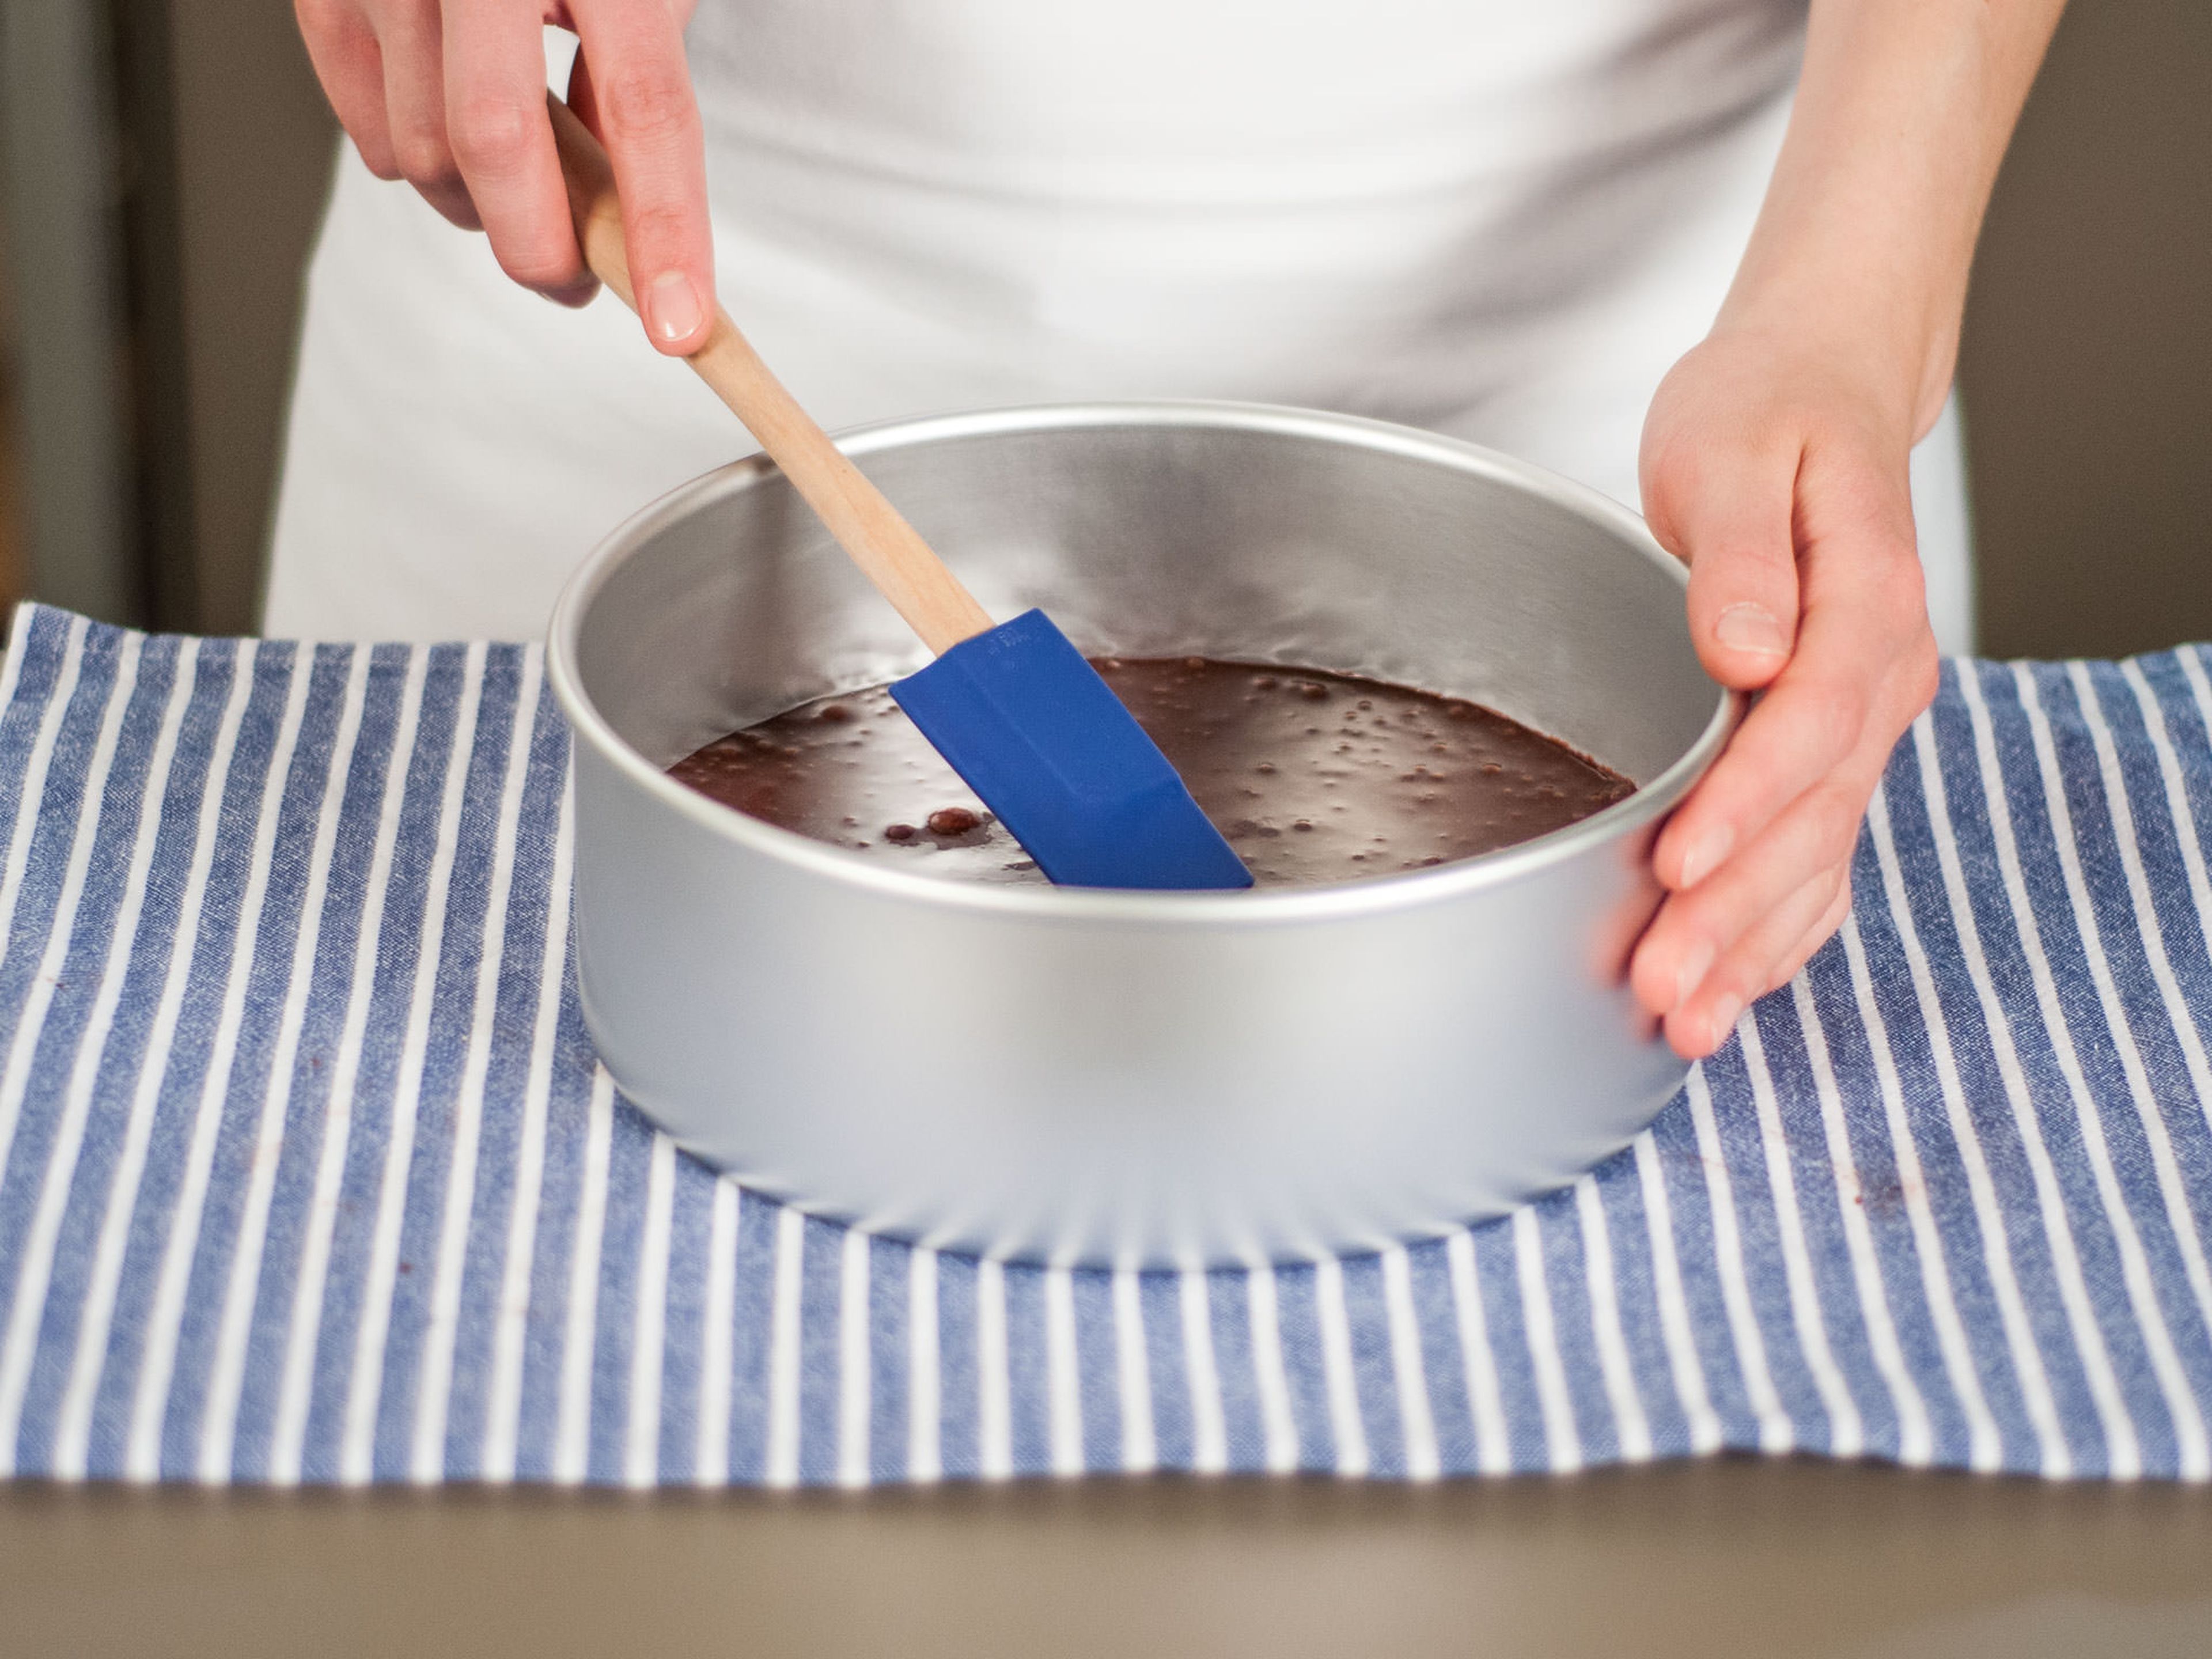 Teig in eine runde Backform gießen und im vorgeheizten Backofen bei 180°C für ca. 15 – 20 Min. backen, bis ein Zahnstocher sauber aus dem Kuchen gezogen werden kann.